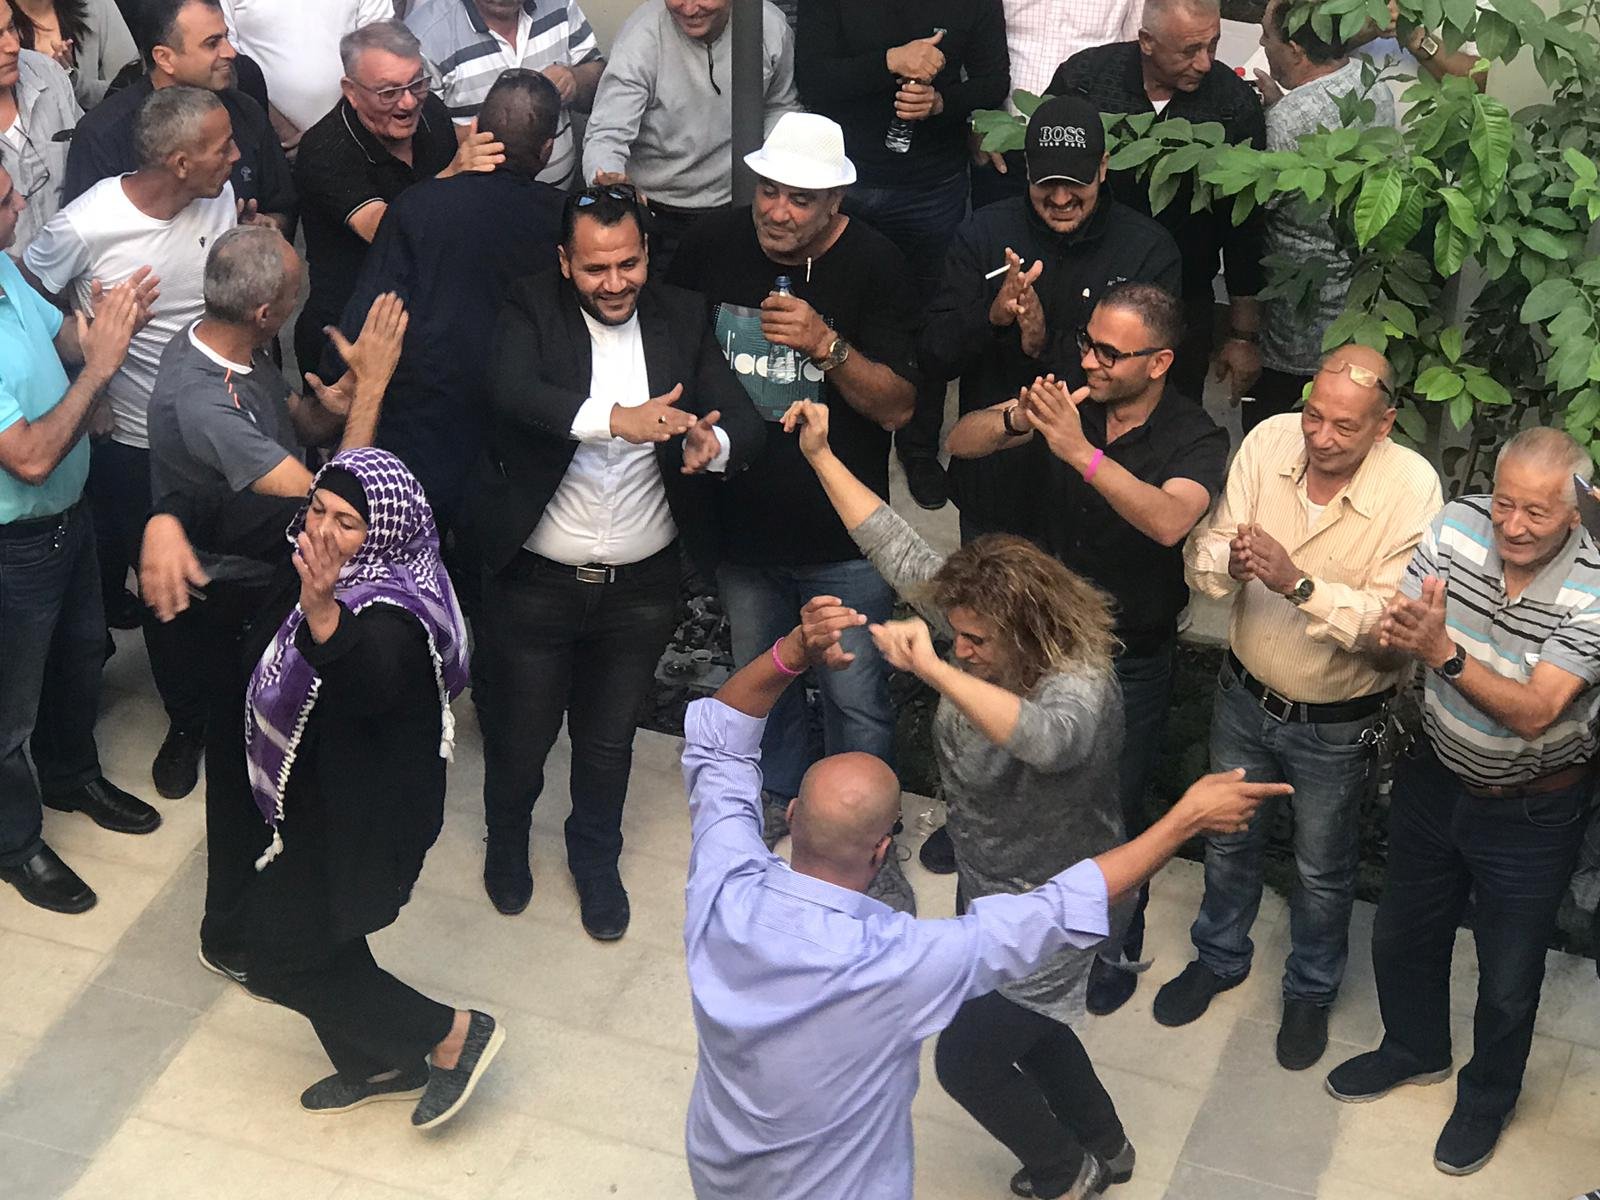 استقبال رئيس بلدية الناصرة سلام ،بالرقص والغناء اثناء دخوله الى مبنى البلدية-4